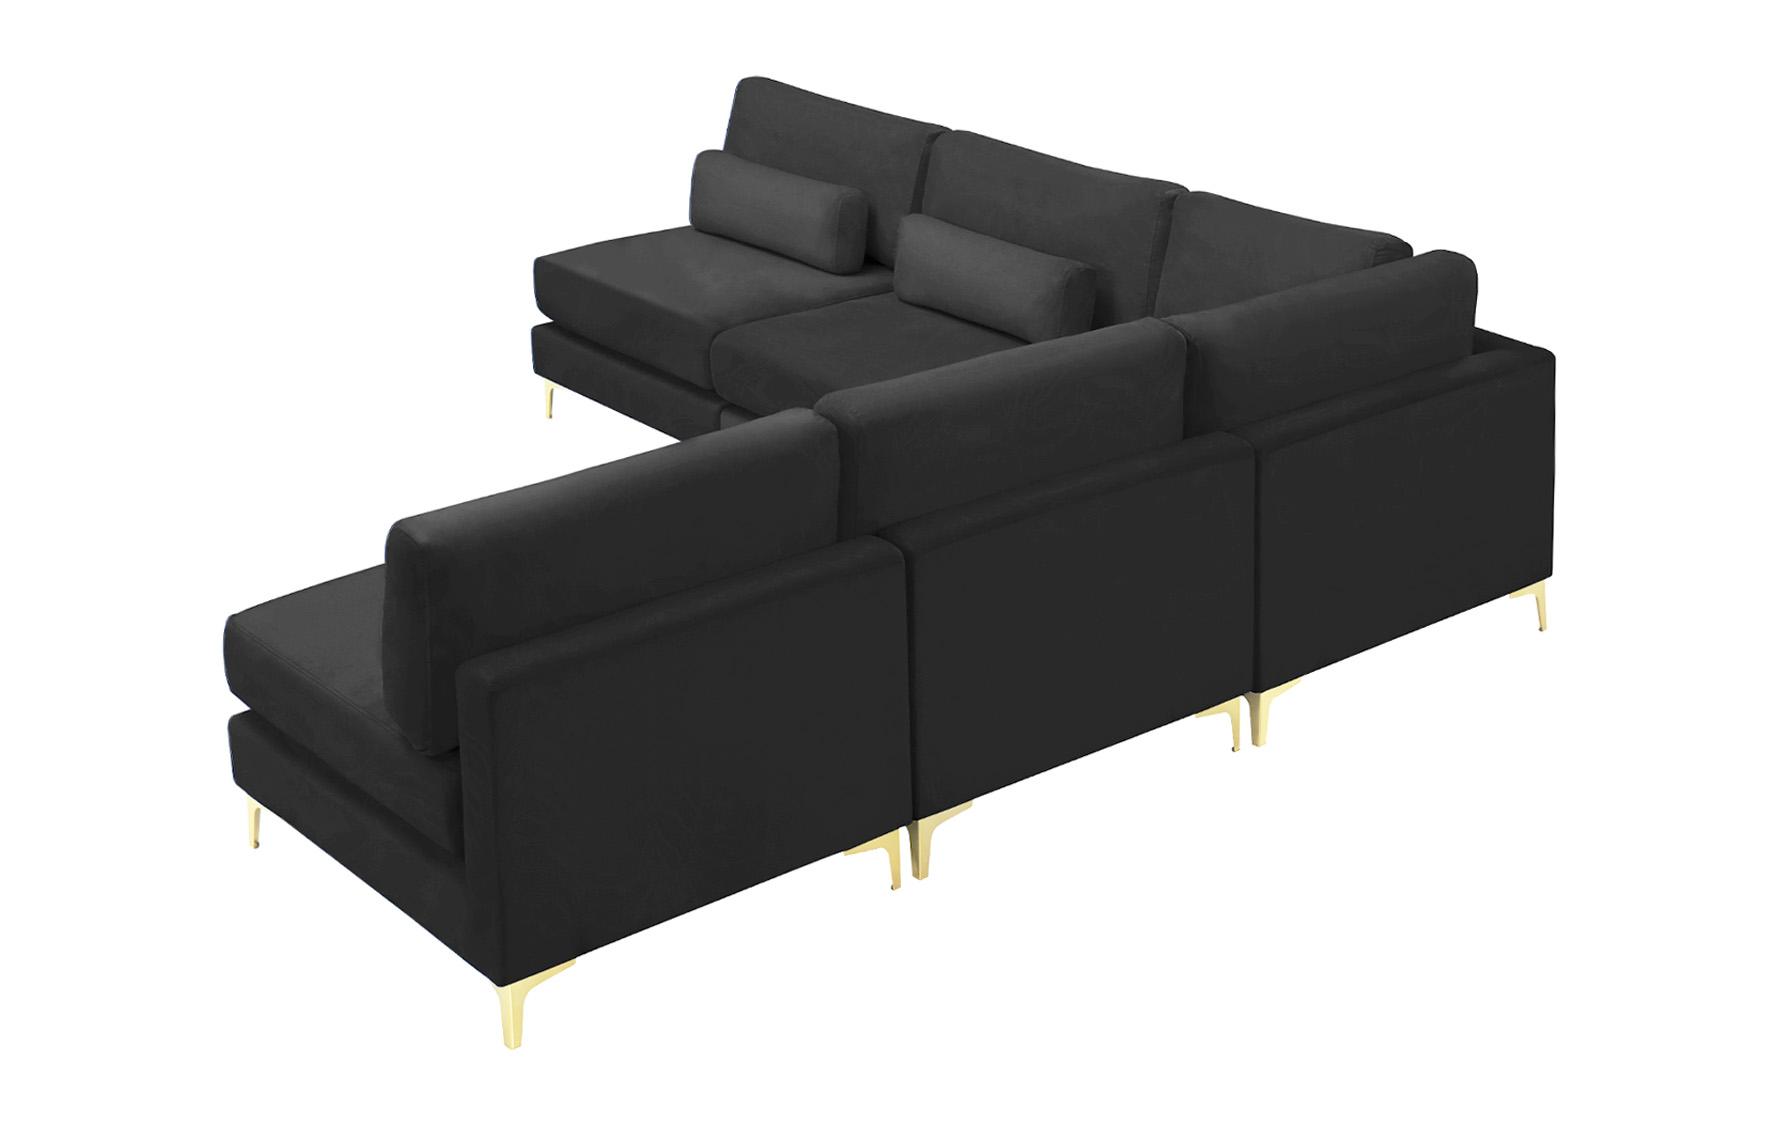 

    
Meridian Furniture JULIA 605Black-Sec5B Modular Sectional Sofa Black 605Black-Sec5B
